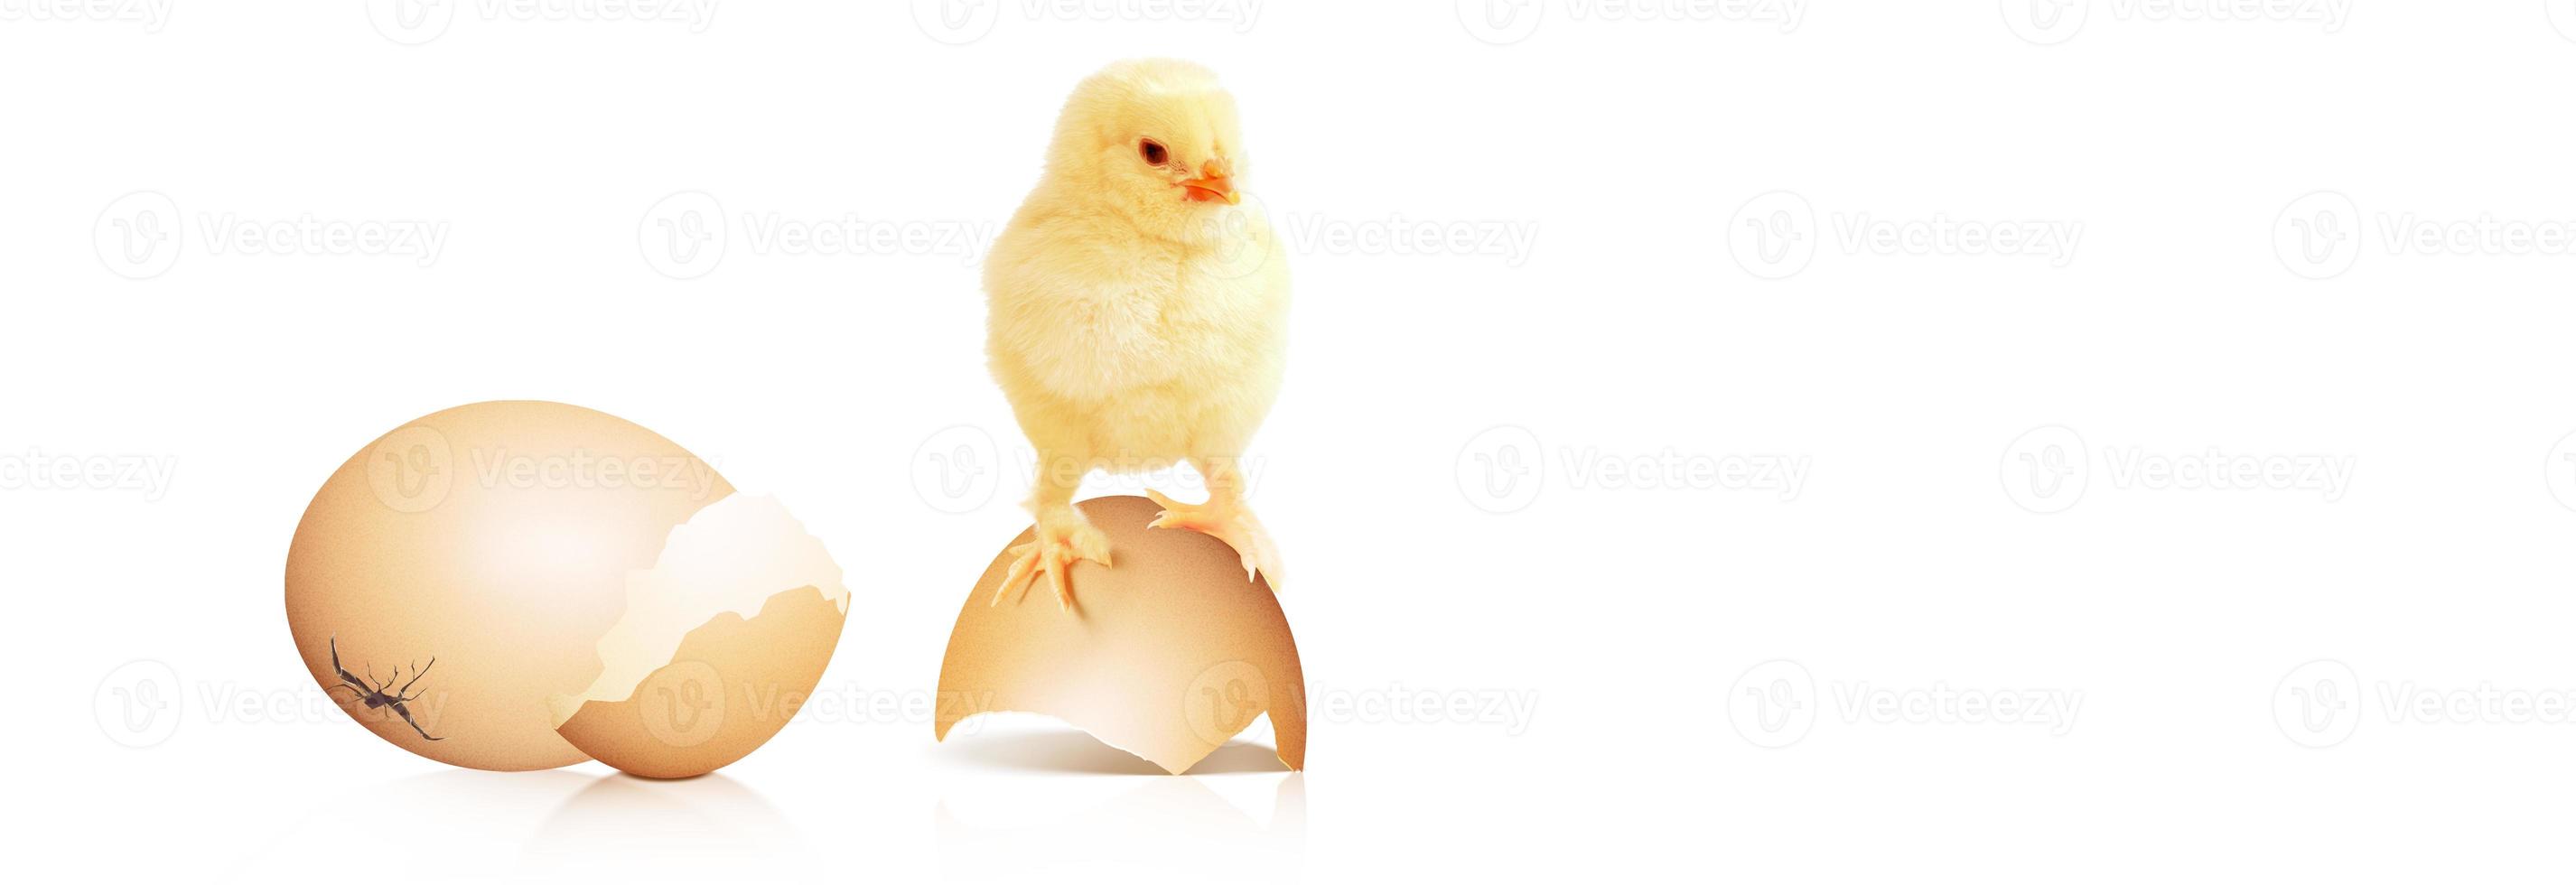 pequeño pollito lindo para pascua. pollito recién nacido amarillo. foto